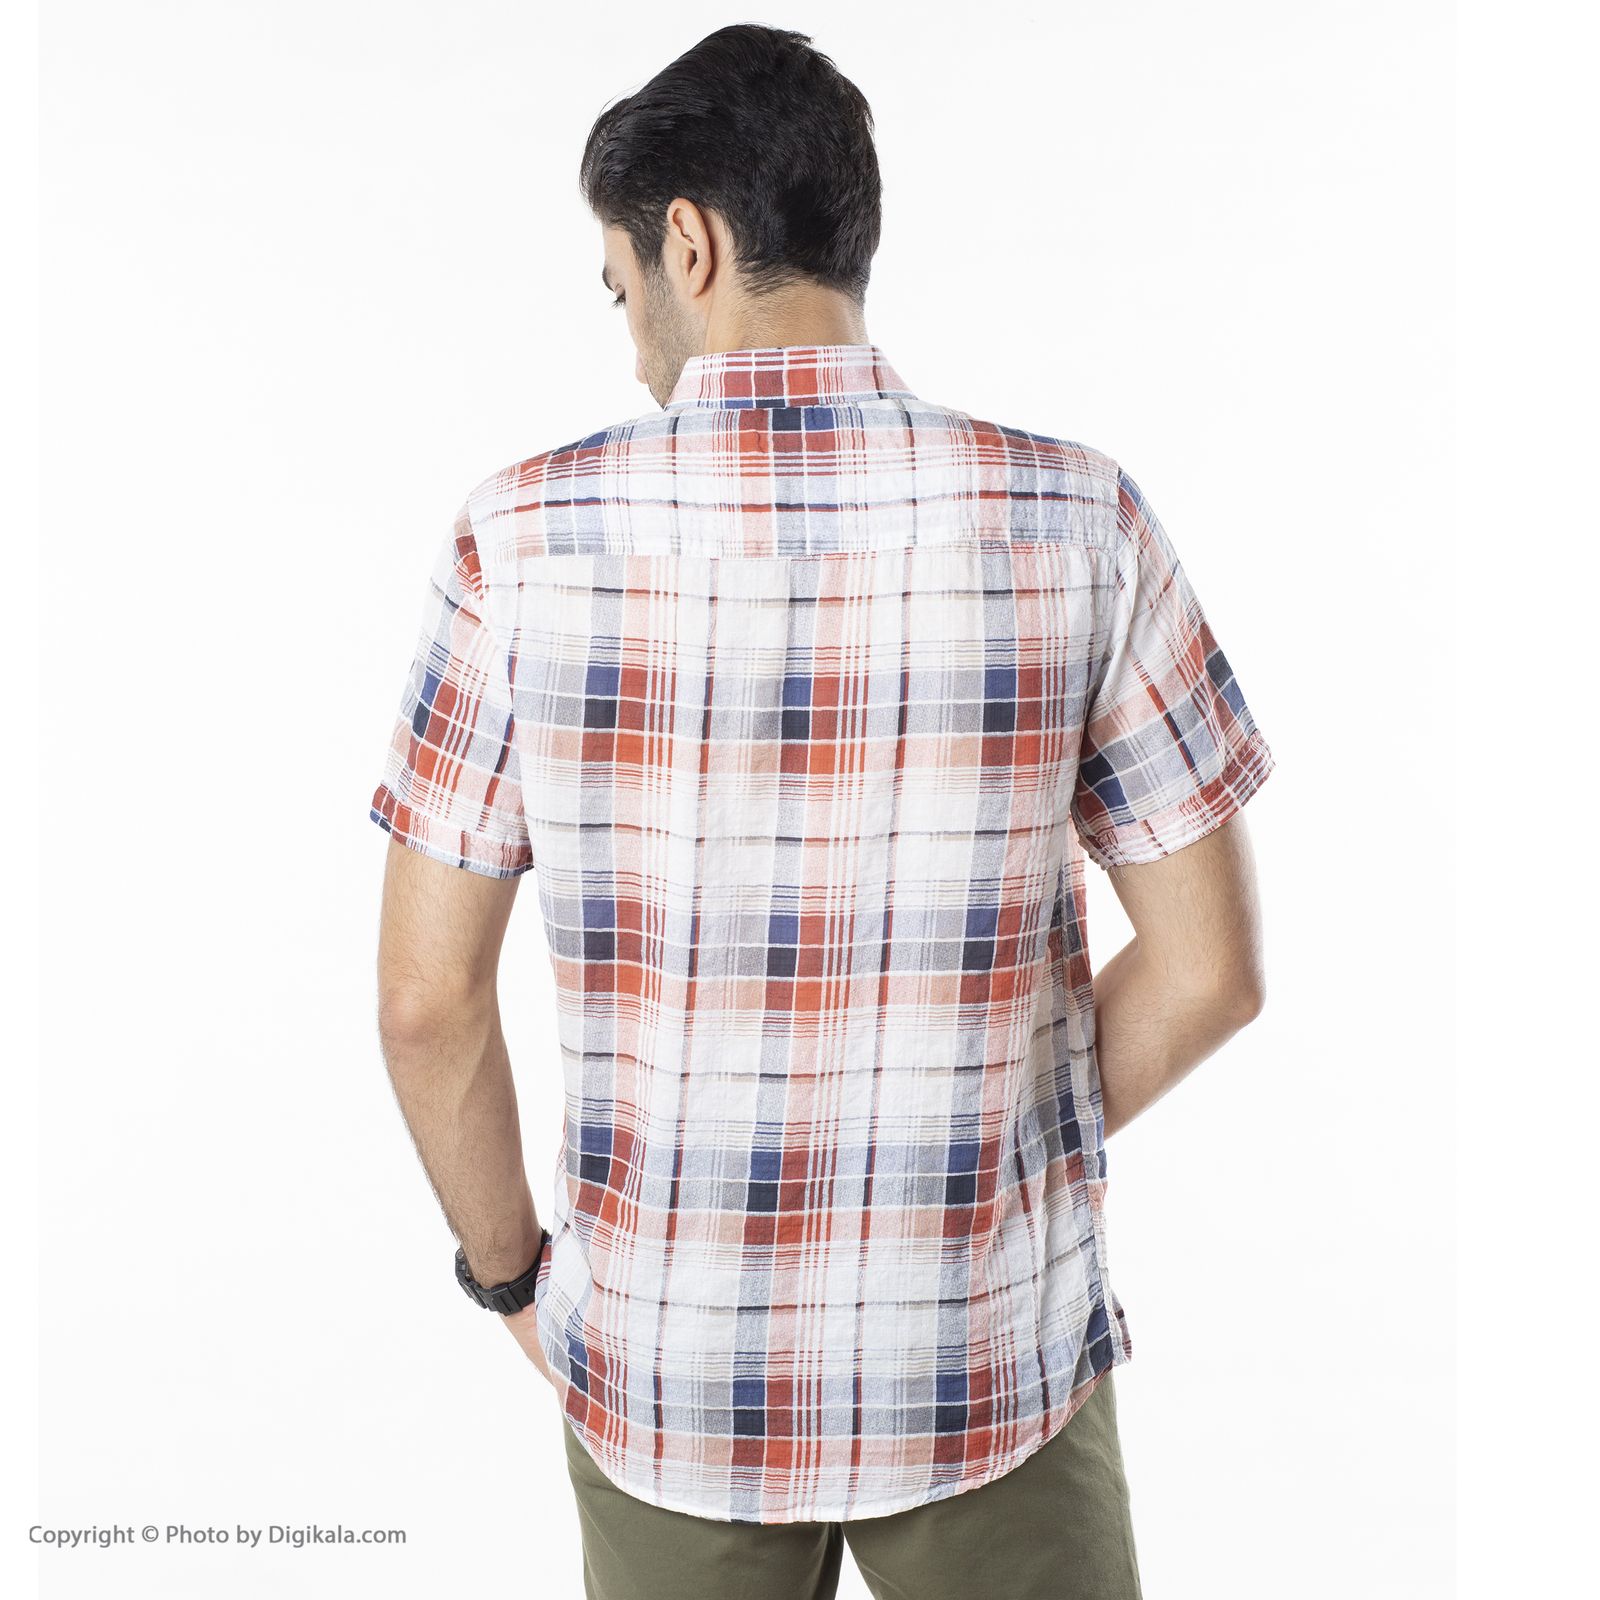 پیراهن مردانه اکزاترس مدل P012004298360005-298 -  - 10